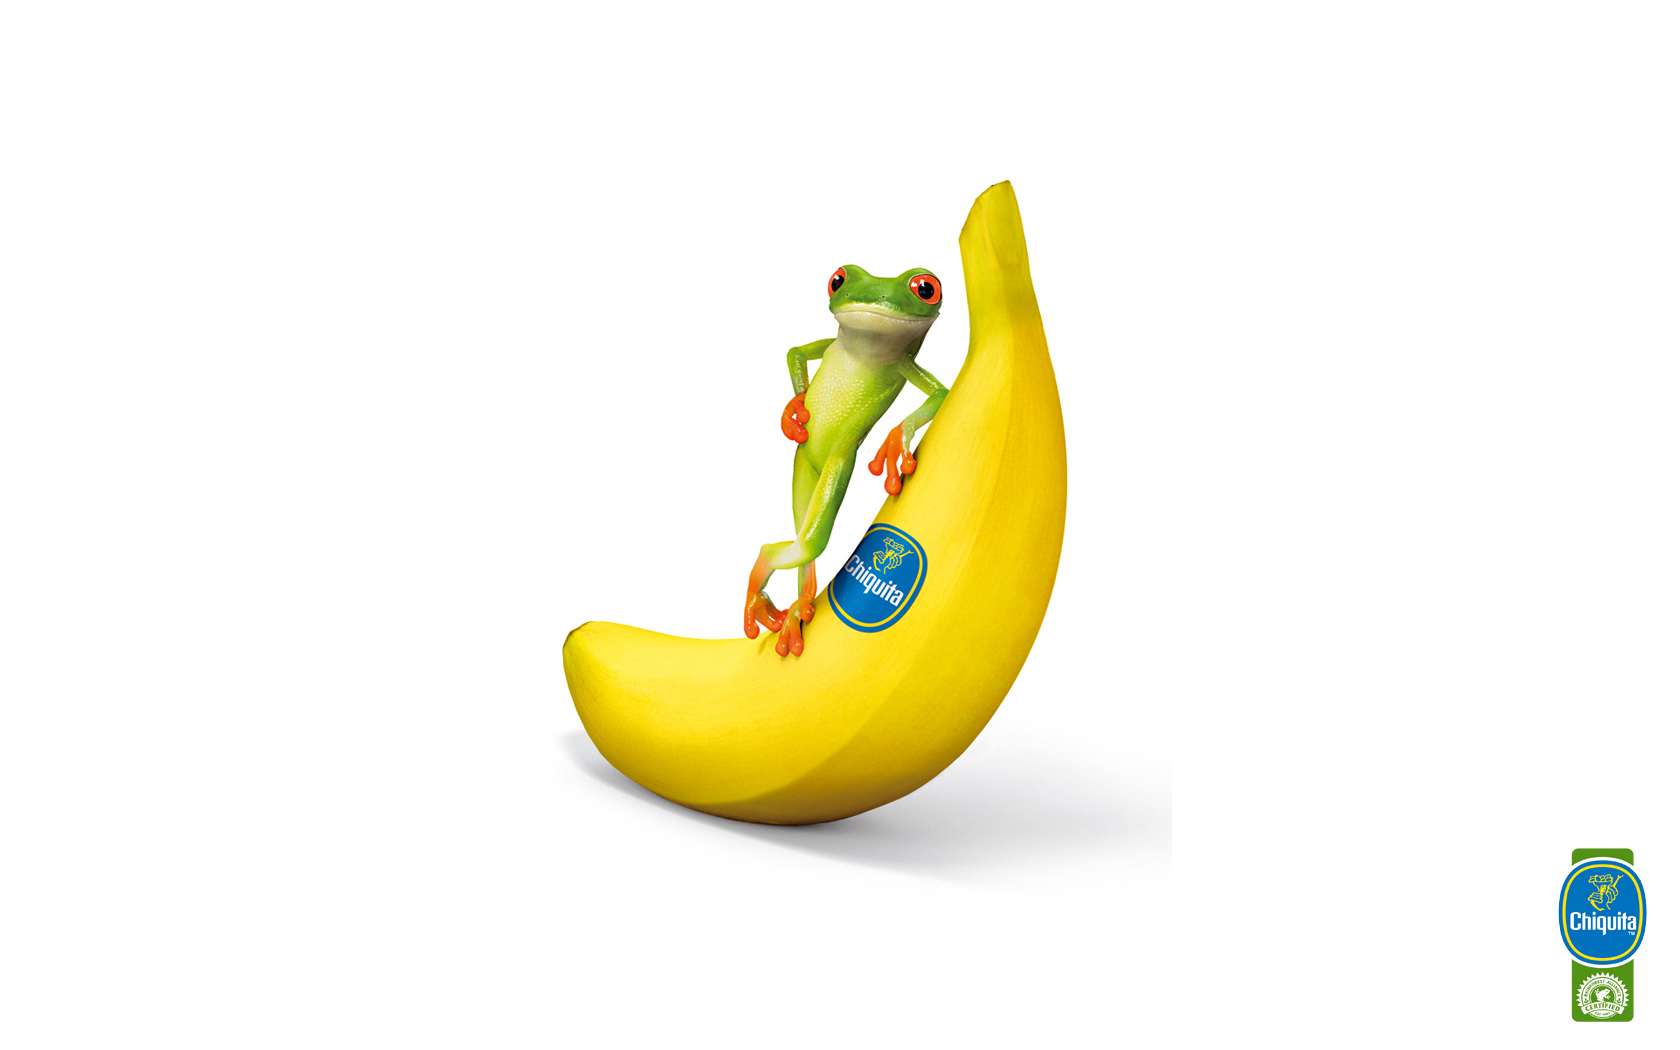 Fotos von lustige Bananen Humor